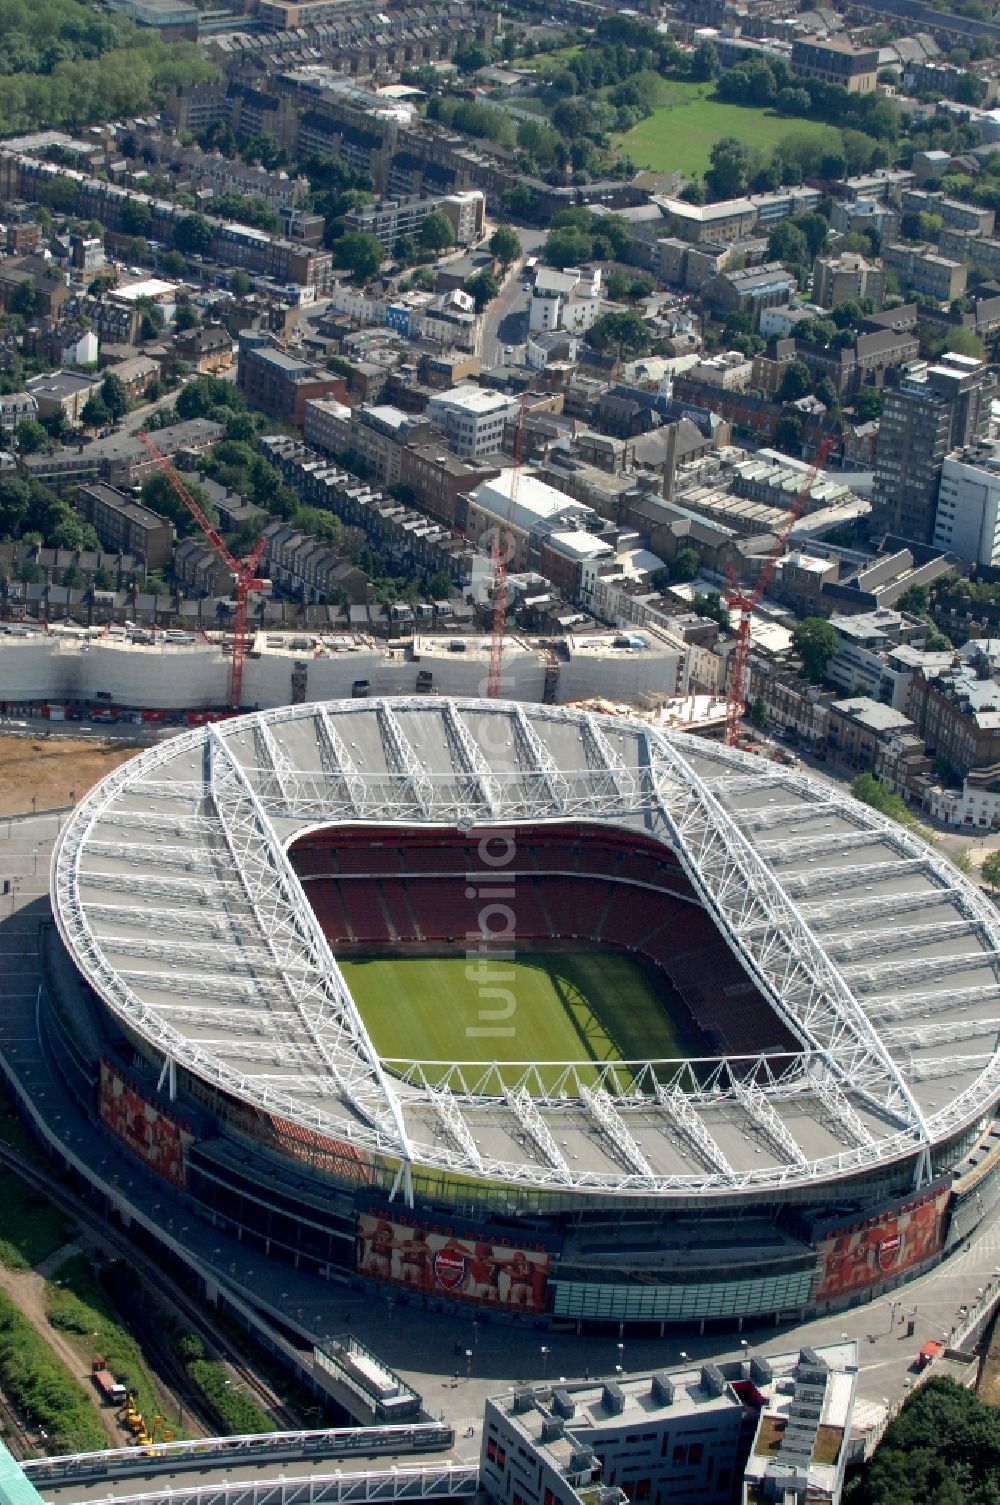 London von oben - Sportstätten-Gelände der Arena des Stadion Emirates Stadium in London in England, Vereinigtes Königreich